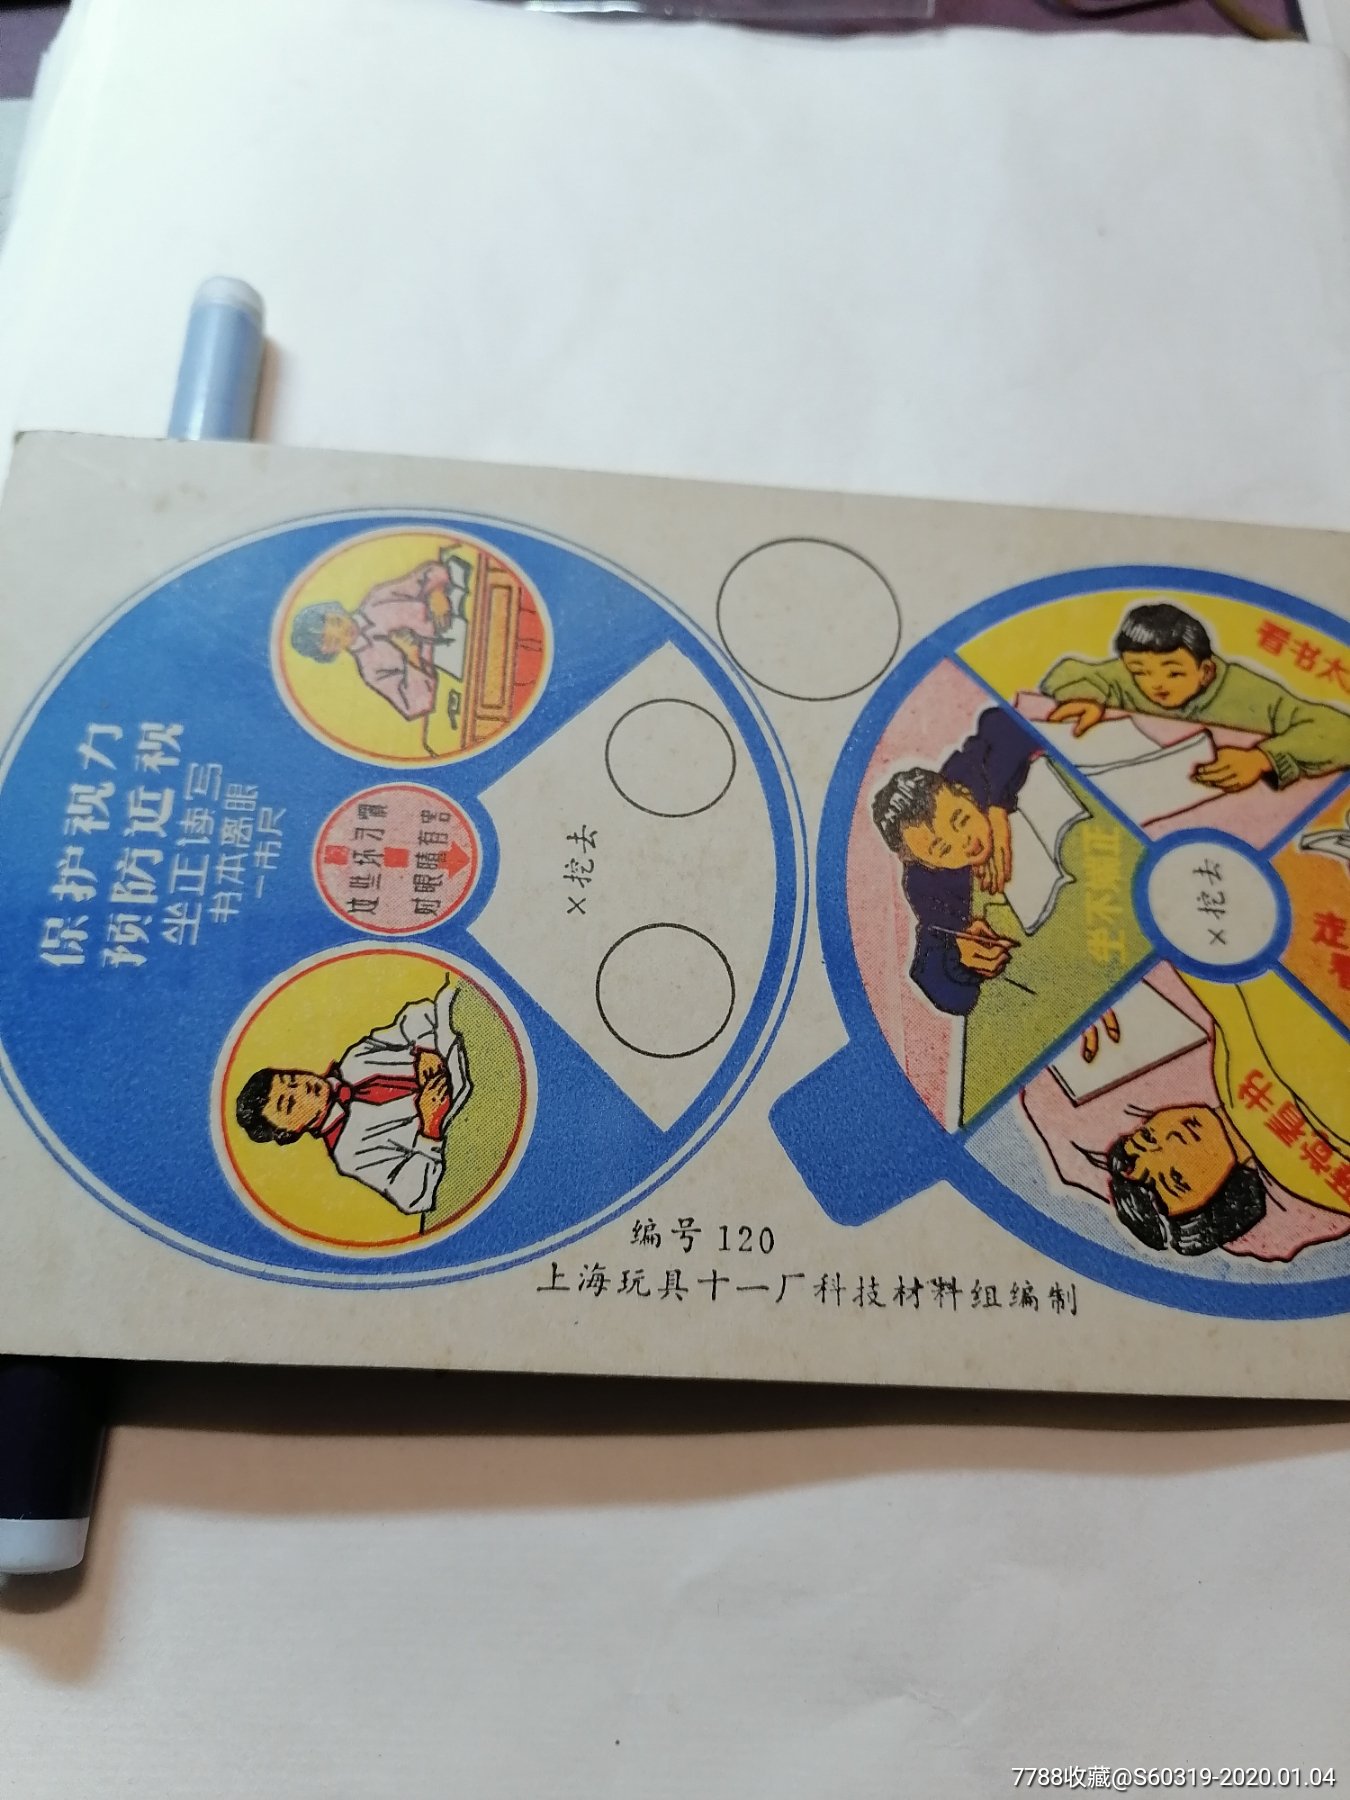 保护视力预防近视玩具卡片【六七十年代】